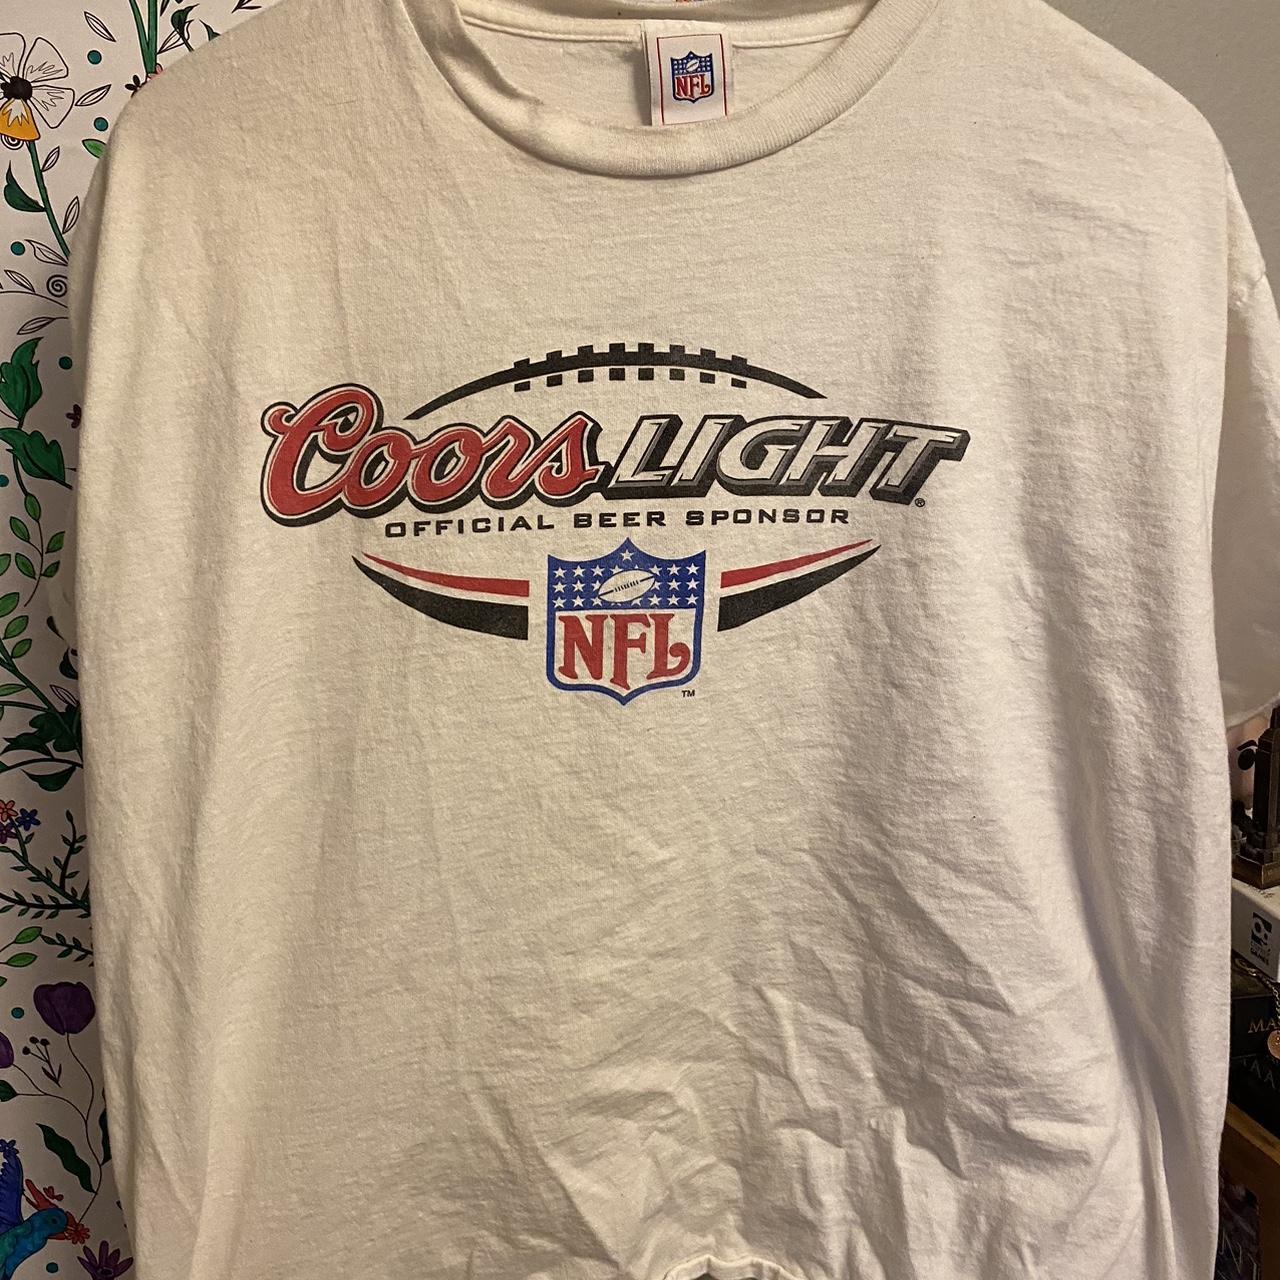 NFL Men's Shirt - White - XL